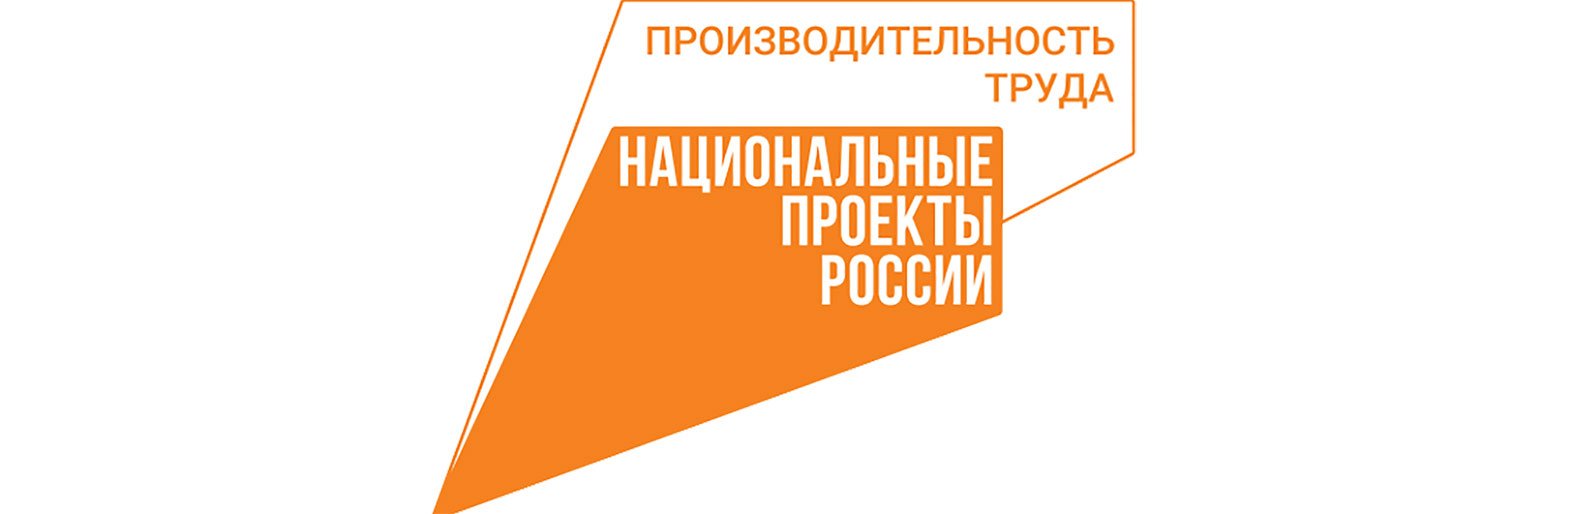 Подведены первые итоги нацпроекта «Производительность труда» на белгородском птицеводческом предприятии